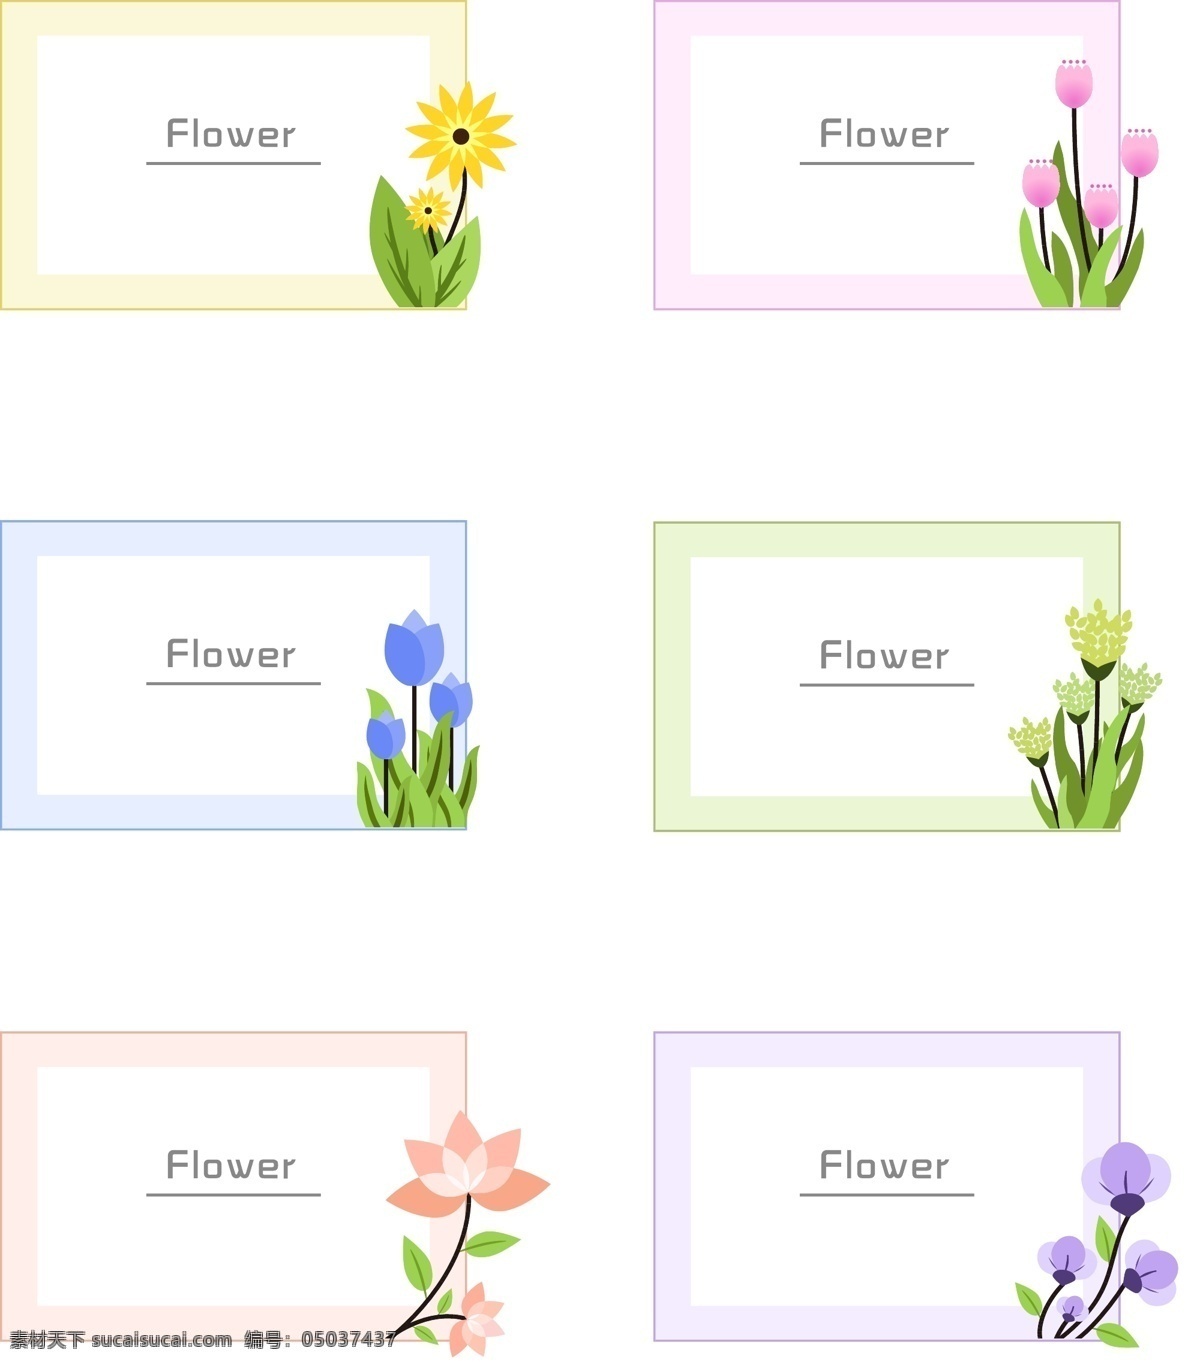 矢量 手绘 花卉 边框 商用 元素 蓝色 绿色 紫色 装饰元素 花 卡通 黄色 粉色 橙色 花卉边框